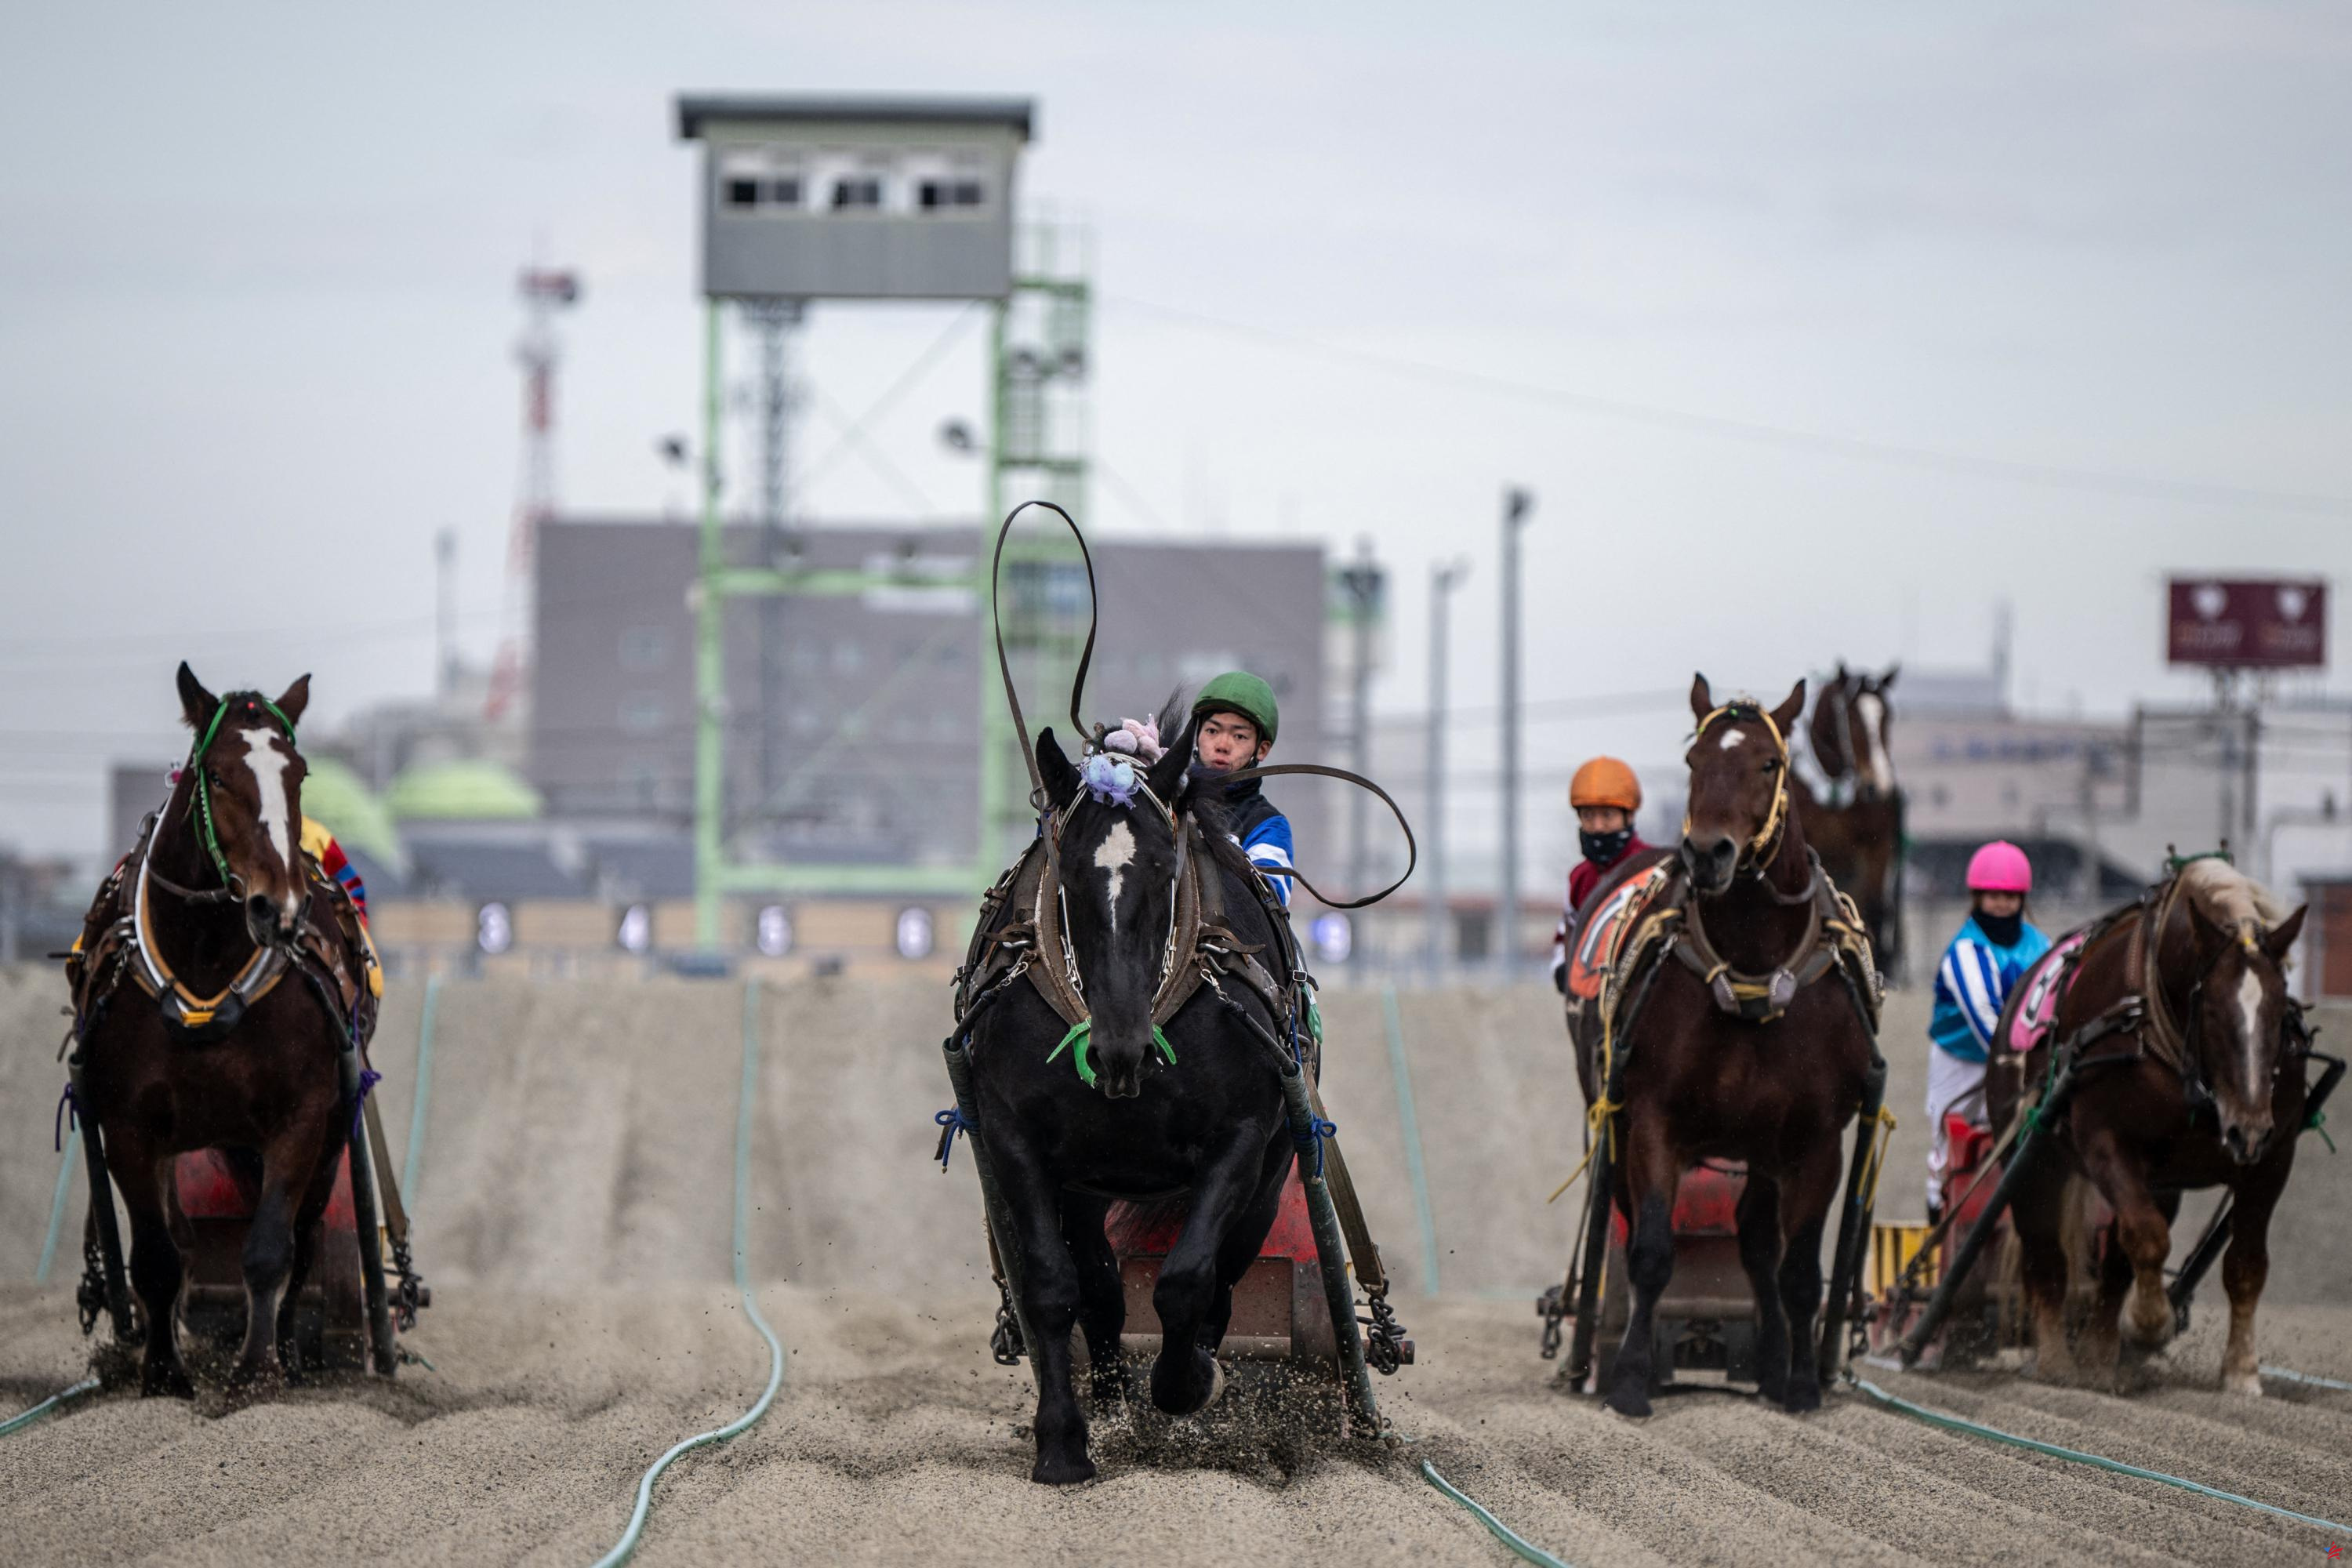 Banei keba, estas sorprendentes carreras de caballos que fascinan a los japoneses (y a los turistas)